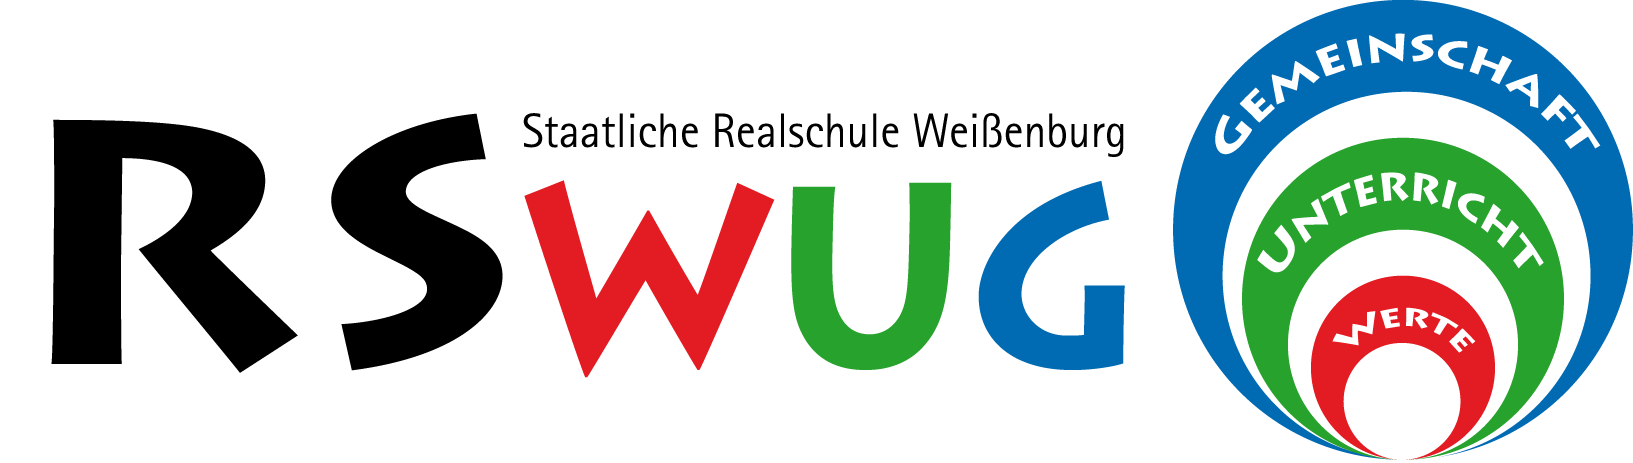 logo rswug cmyk